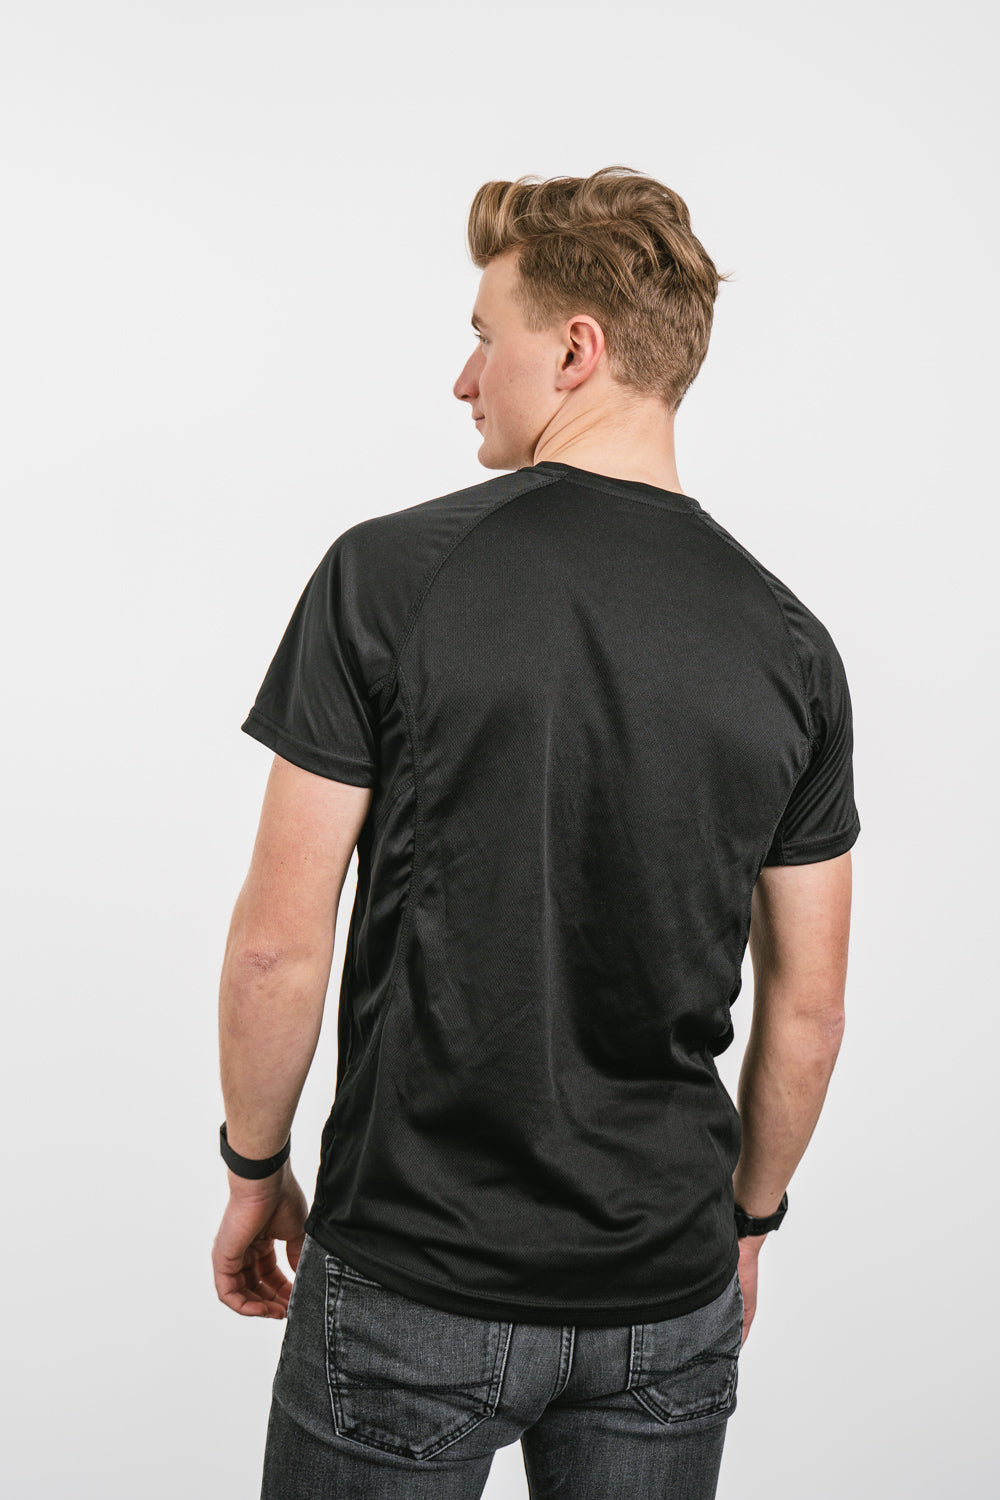 Outdooractive Pro+-T-Shirt schwarz -Herren